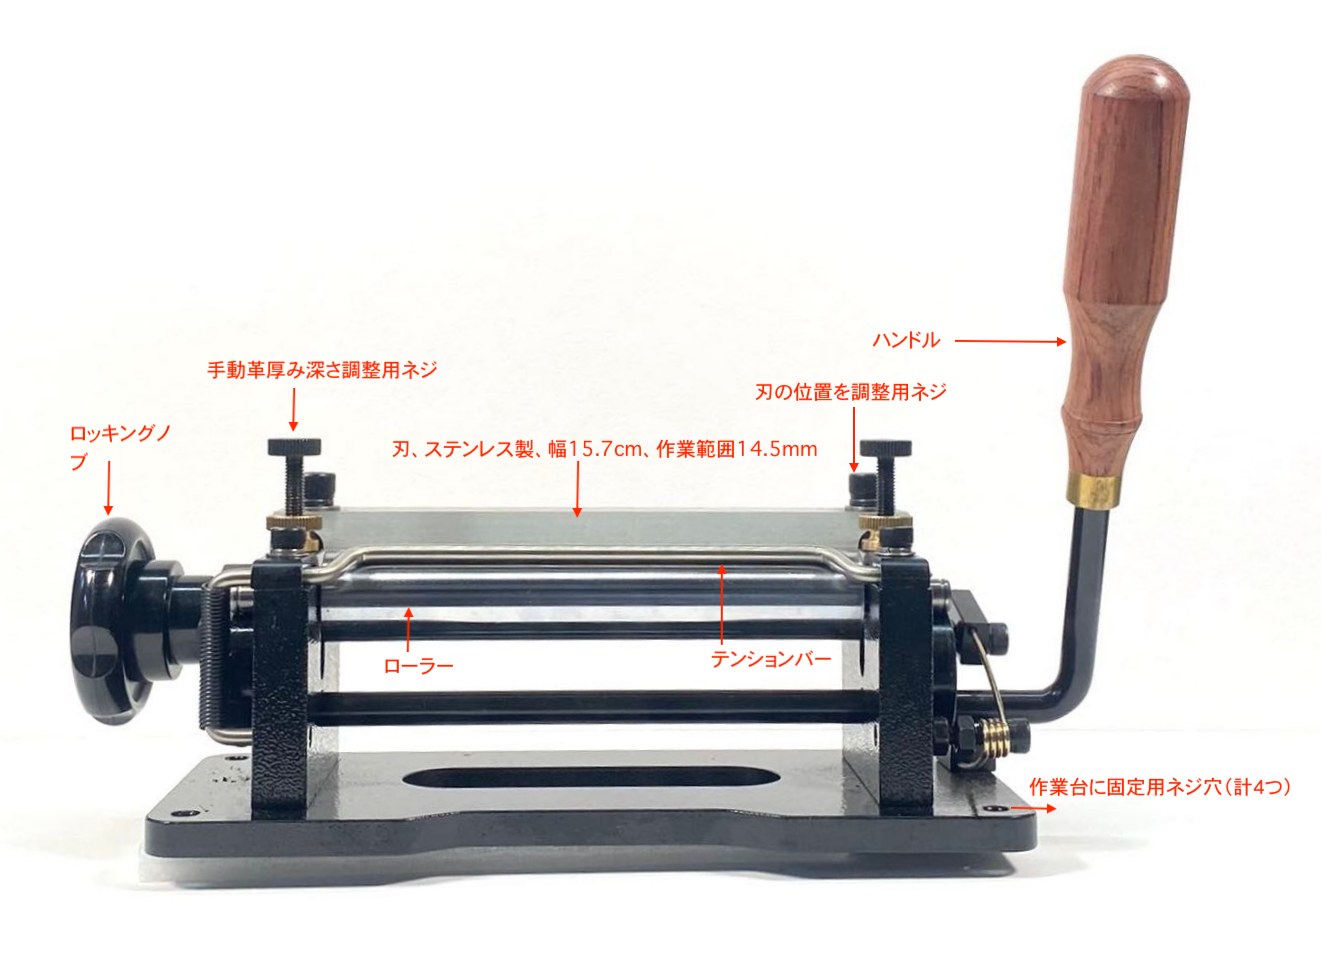 【楽天市場】手動革漉き機 レザースプリッター ベルト用革漉き機 